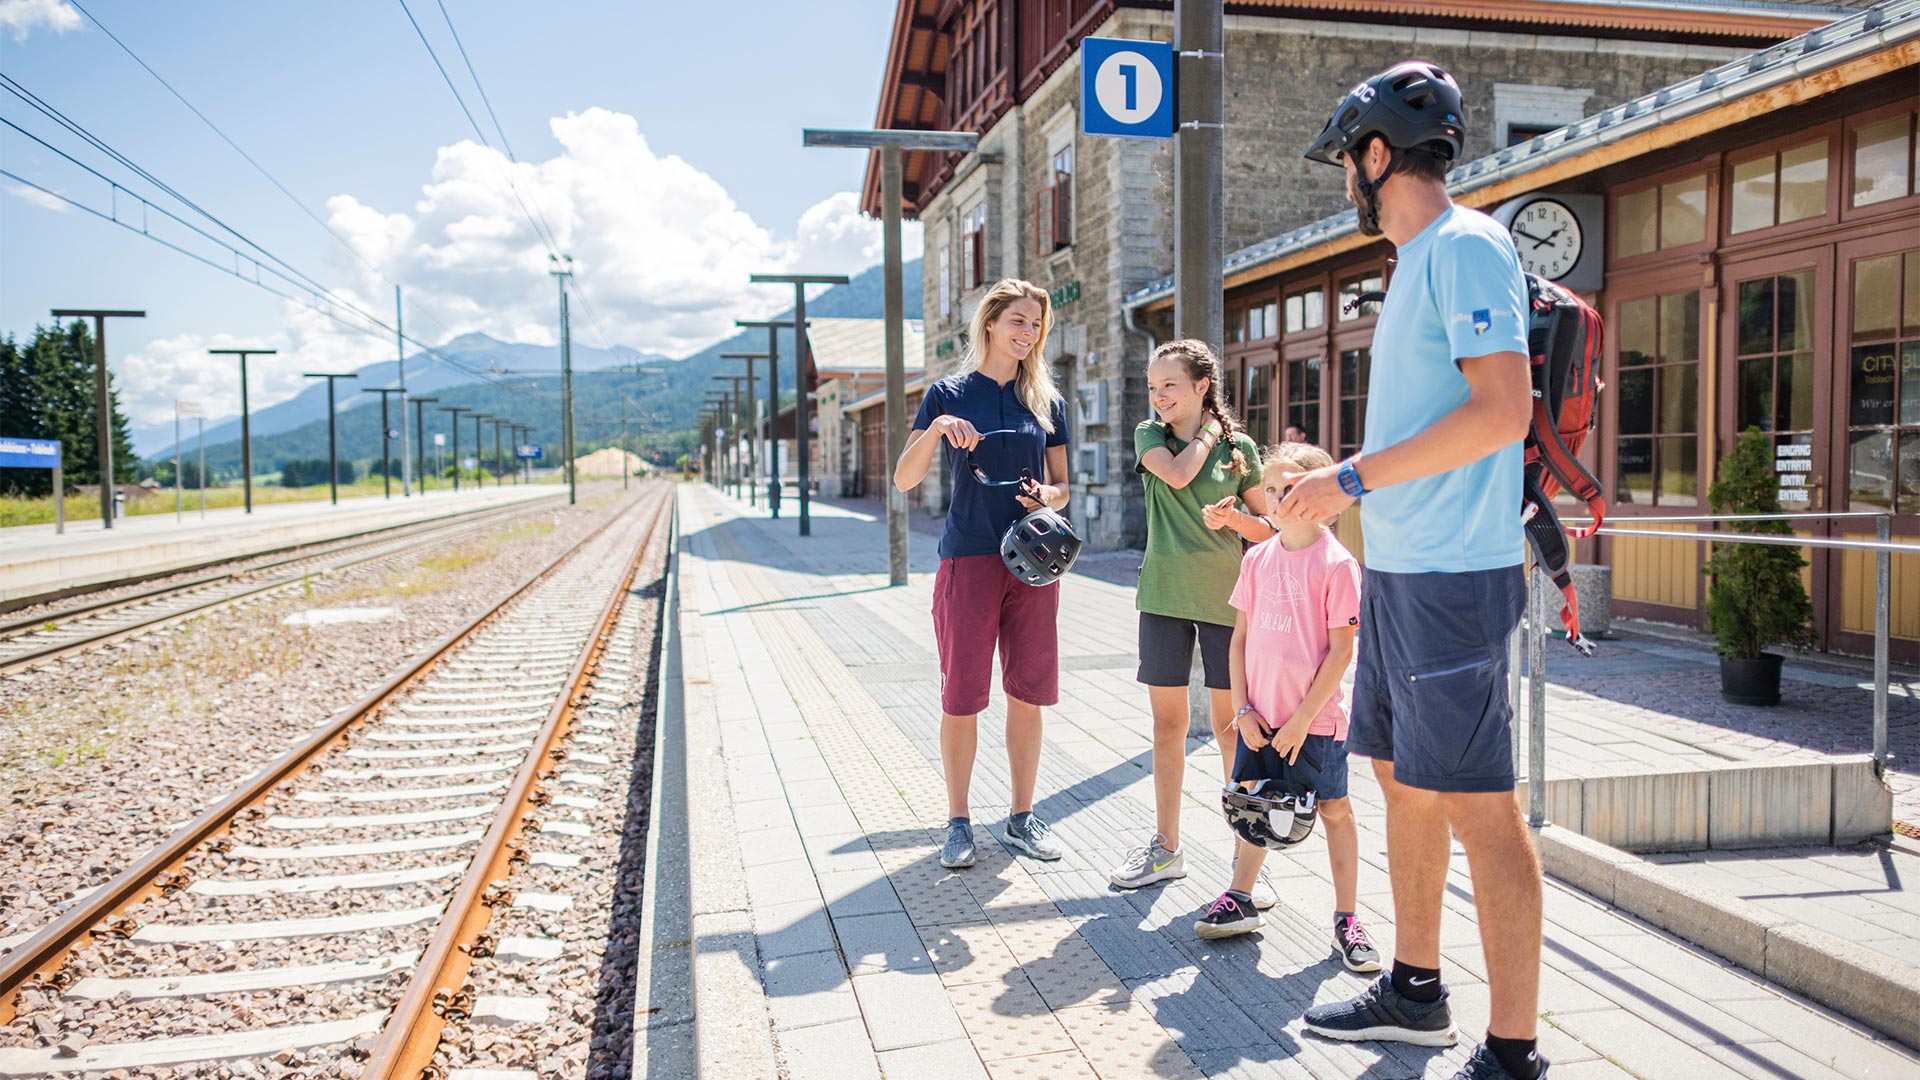 Eine Familie, die ihre Aktivitäten auf dem Fahrrad beendet hat, steht am Bahnhof und wartet auf den Zug, der ankommt.